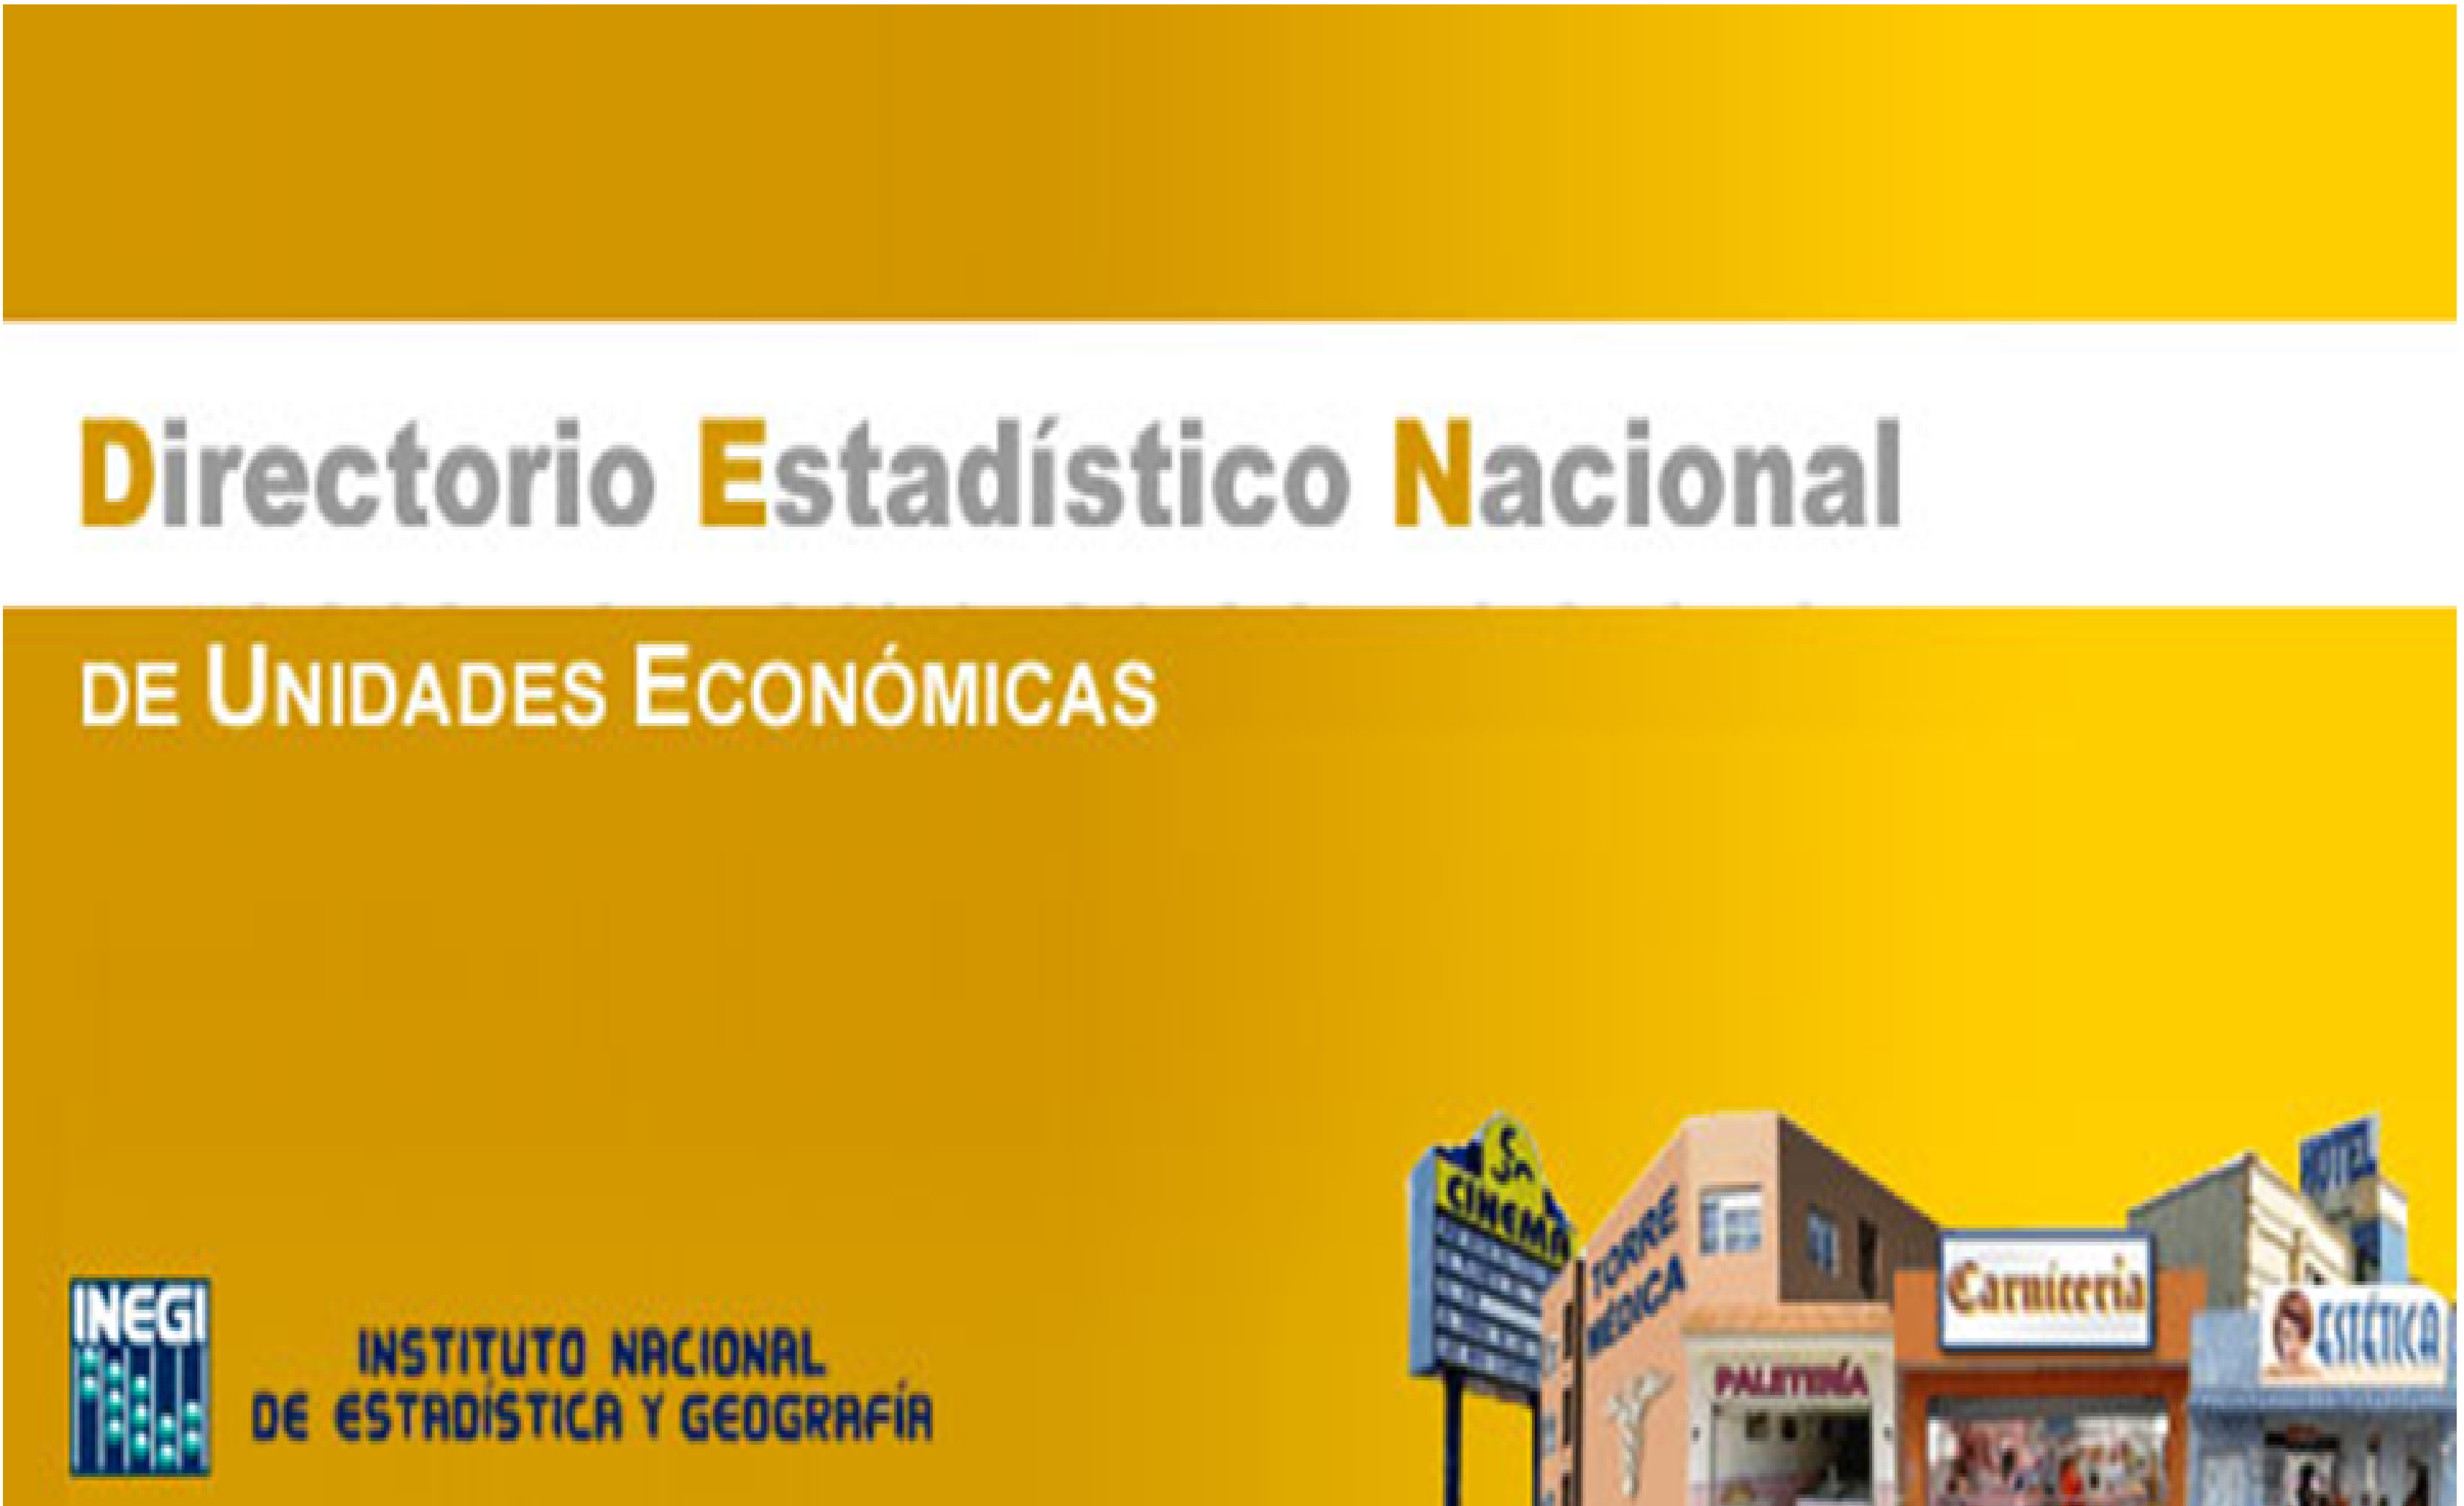 Directorio Estadístico Nacional de Unidades Económicas (DENUE)